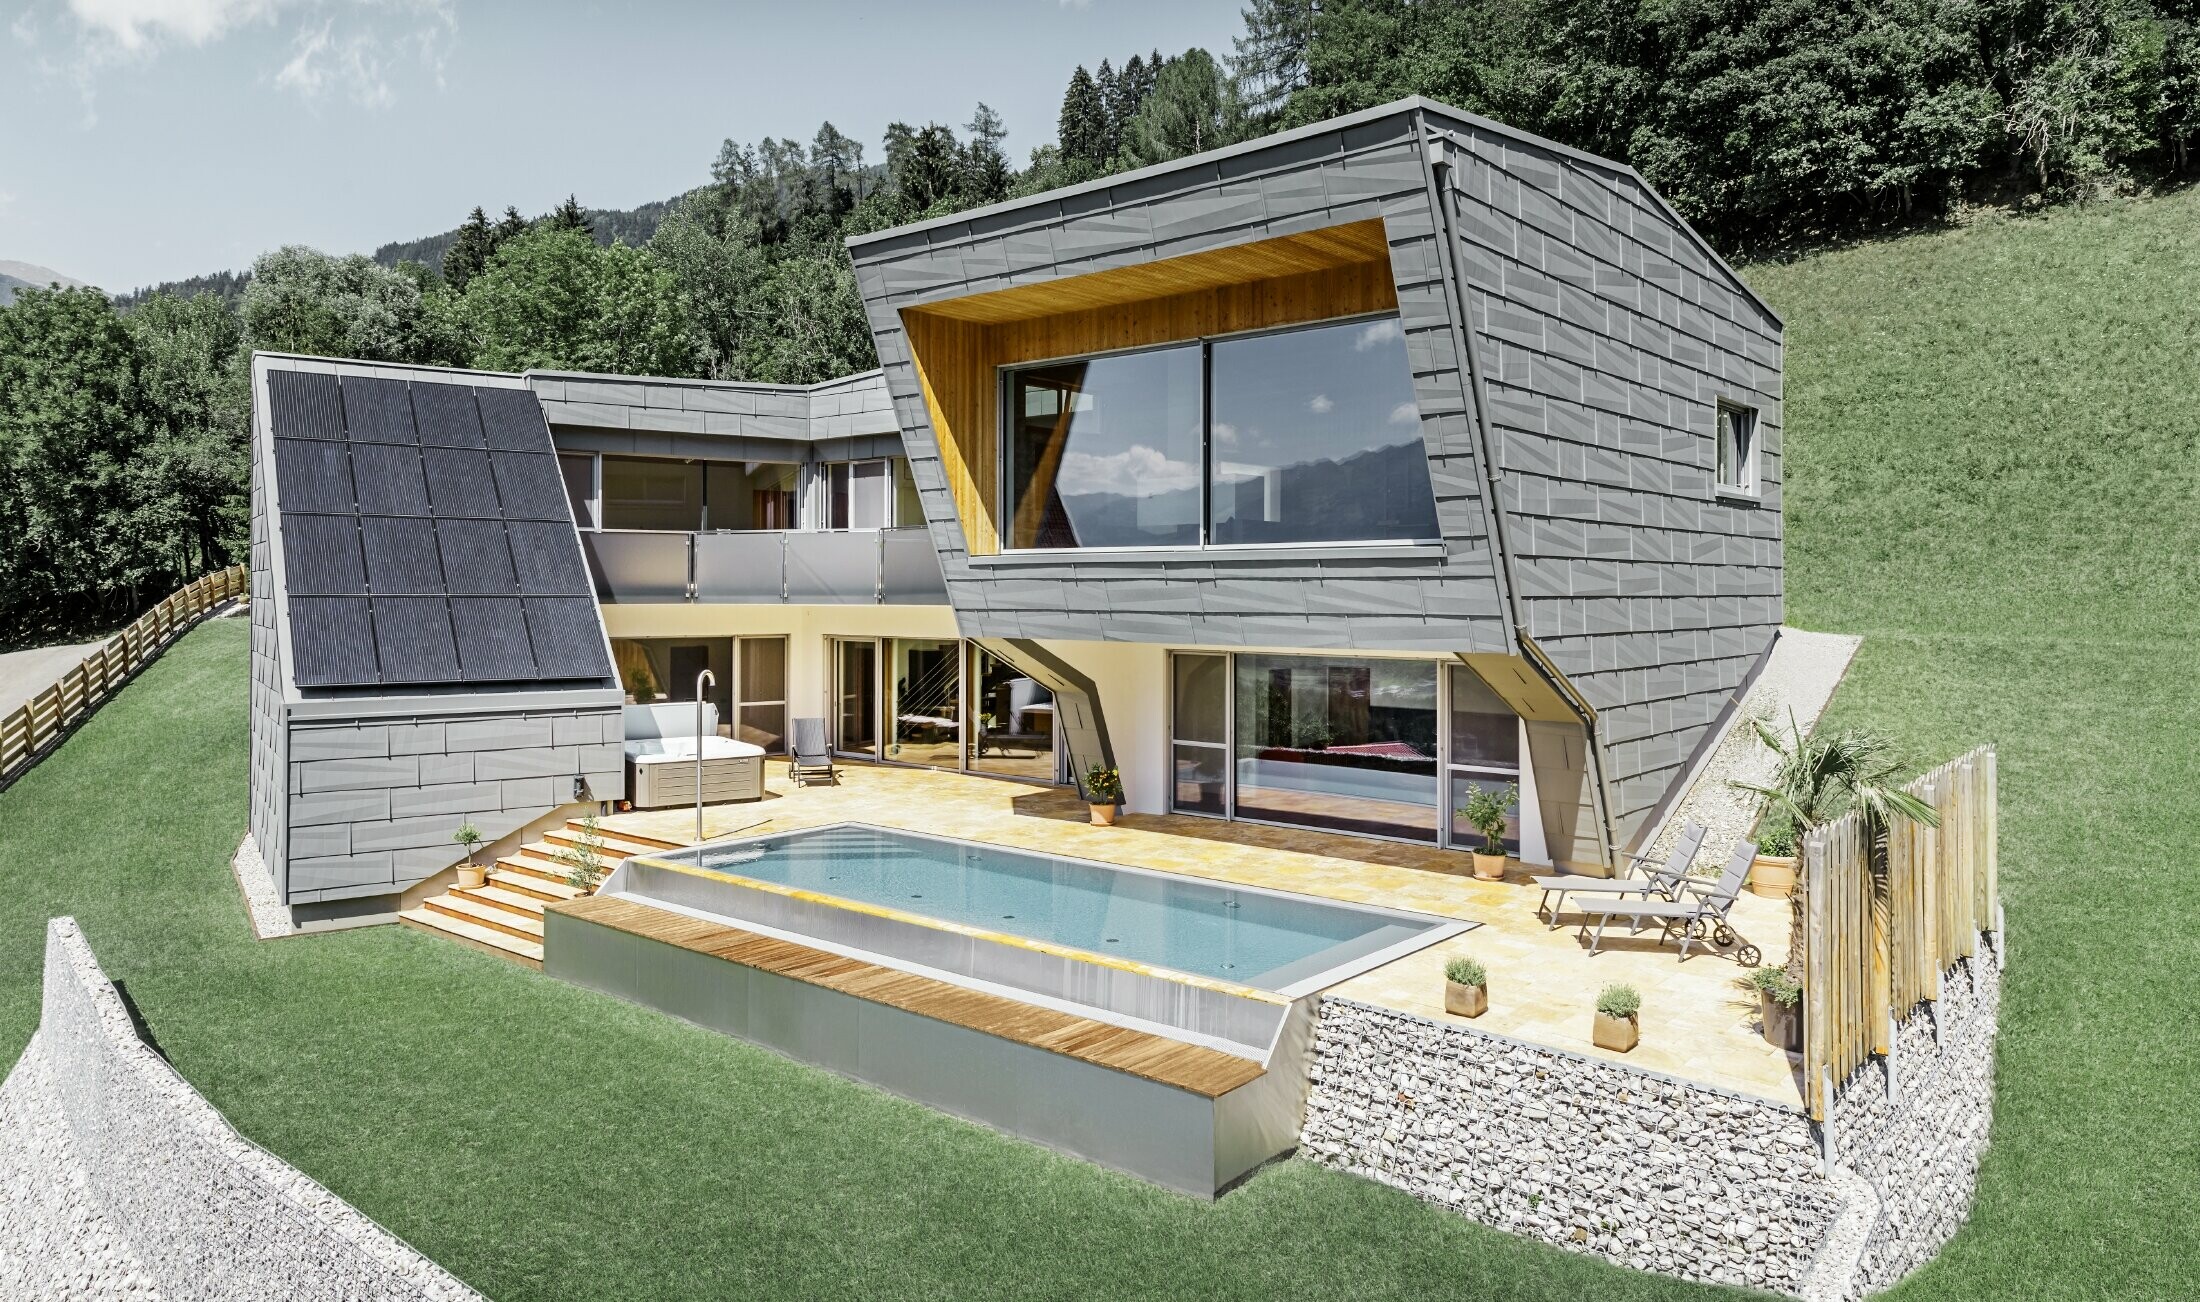 Modernes Einfamilienhaus in Hanglage mit Swimmingpool wurde mit dem Fassadenpaneel FX.12 von PREFA in P.10 Hellgrau verkleidet.